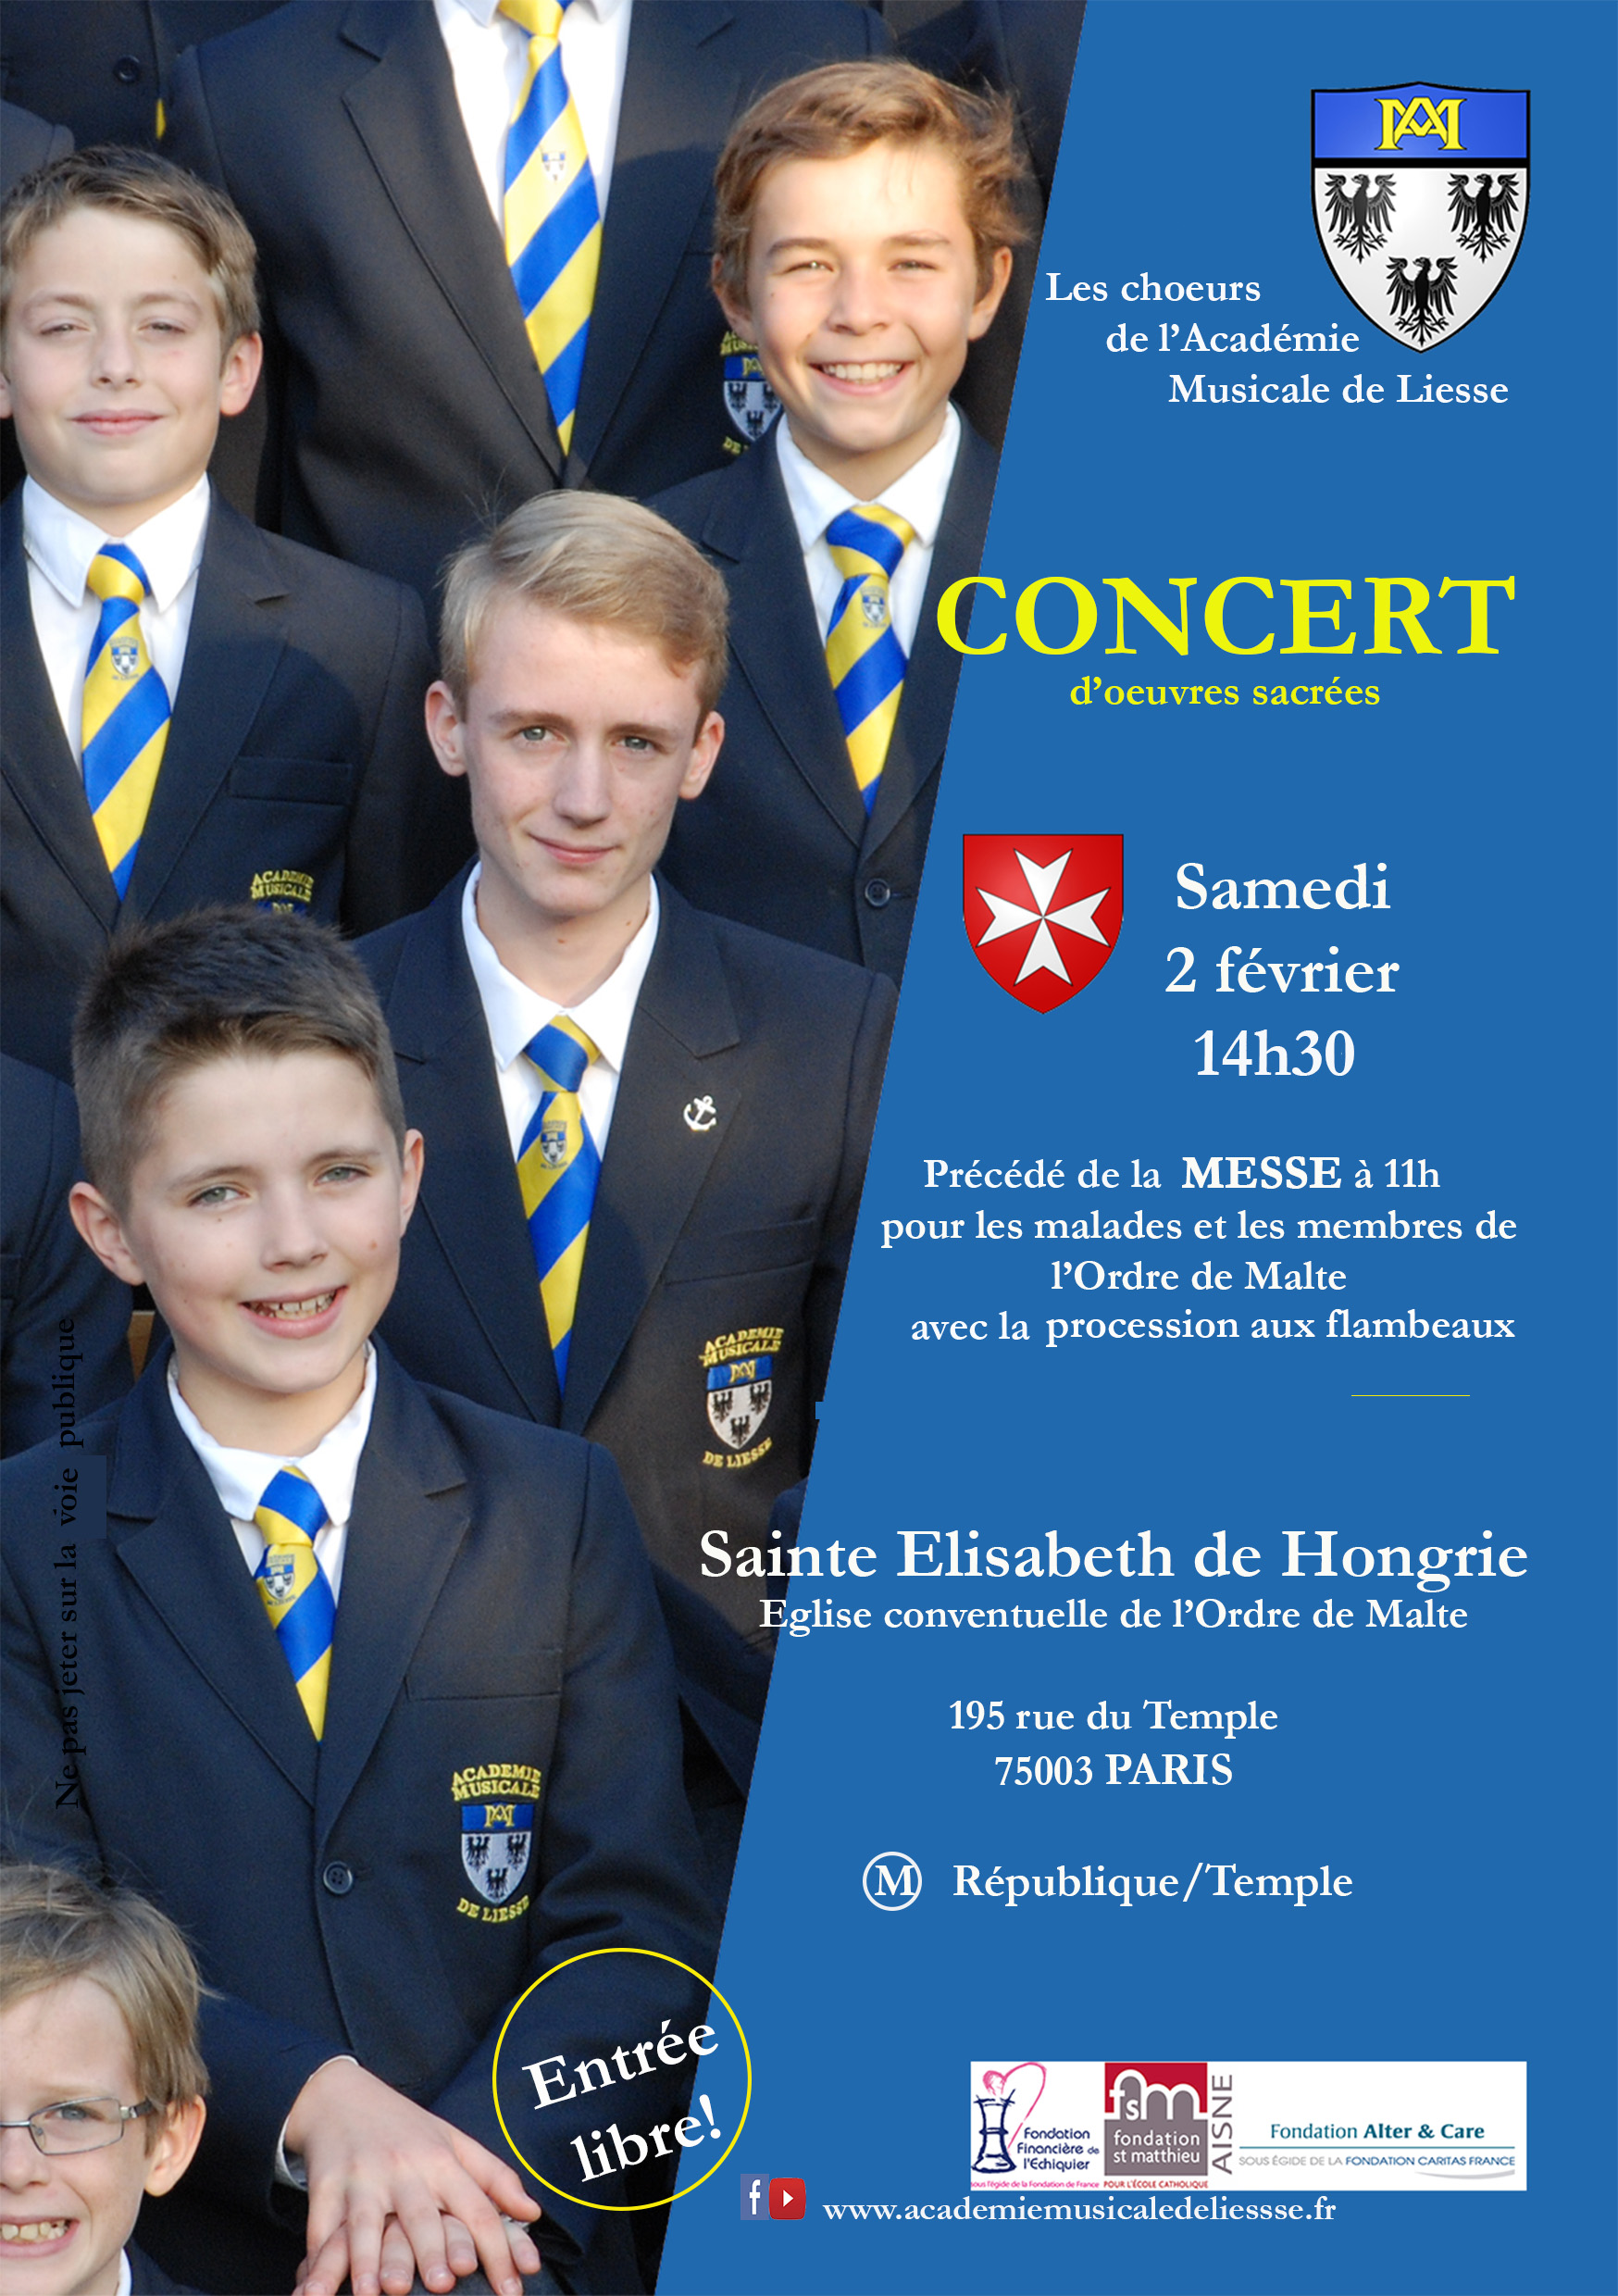 Concert en l’église Sainte Elisabeth de Hongrie – Académie Musicale de Liesse le 2 février 2019 à Paris